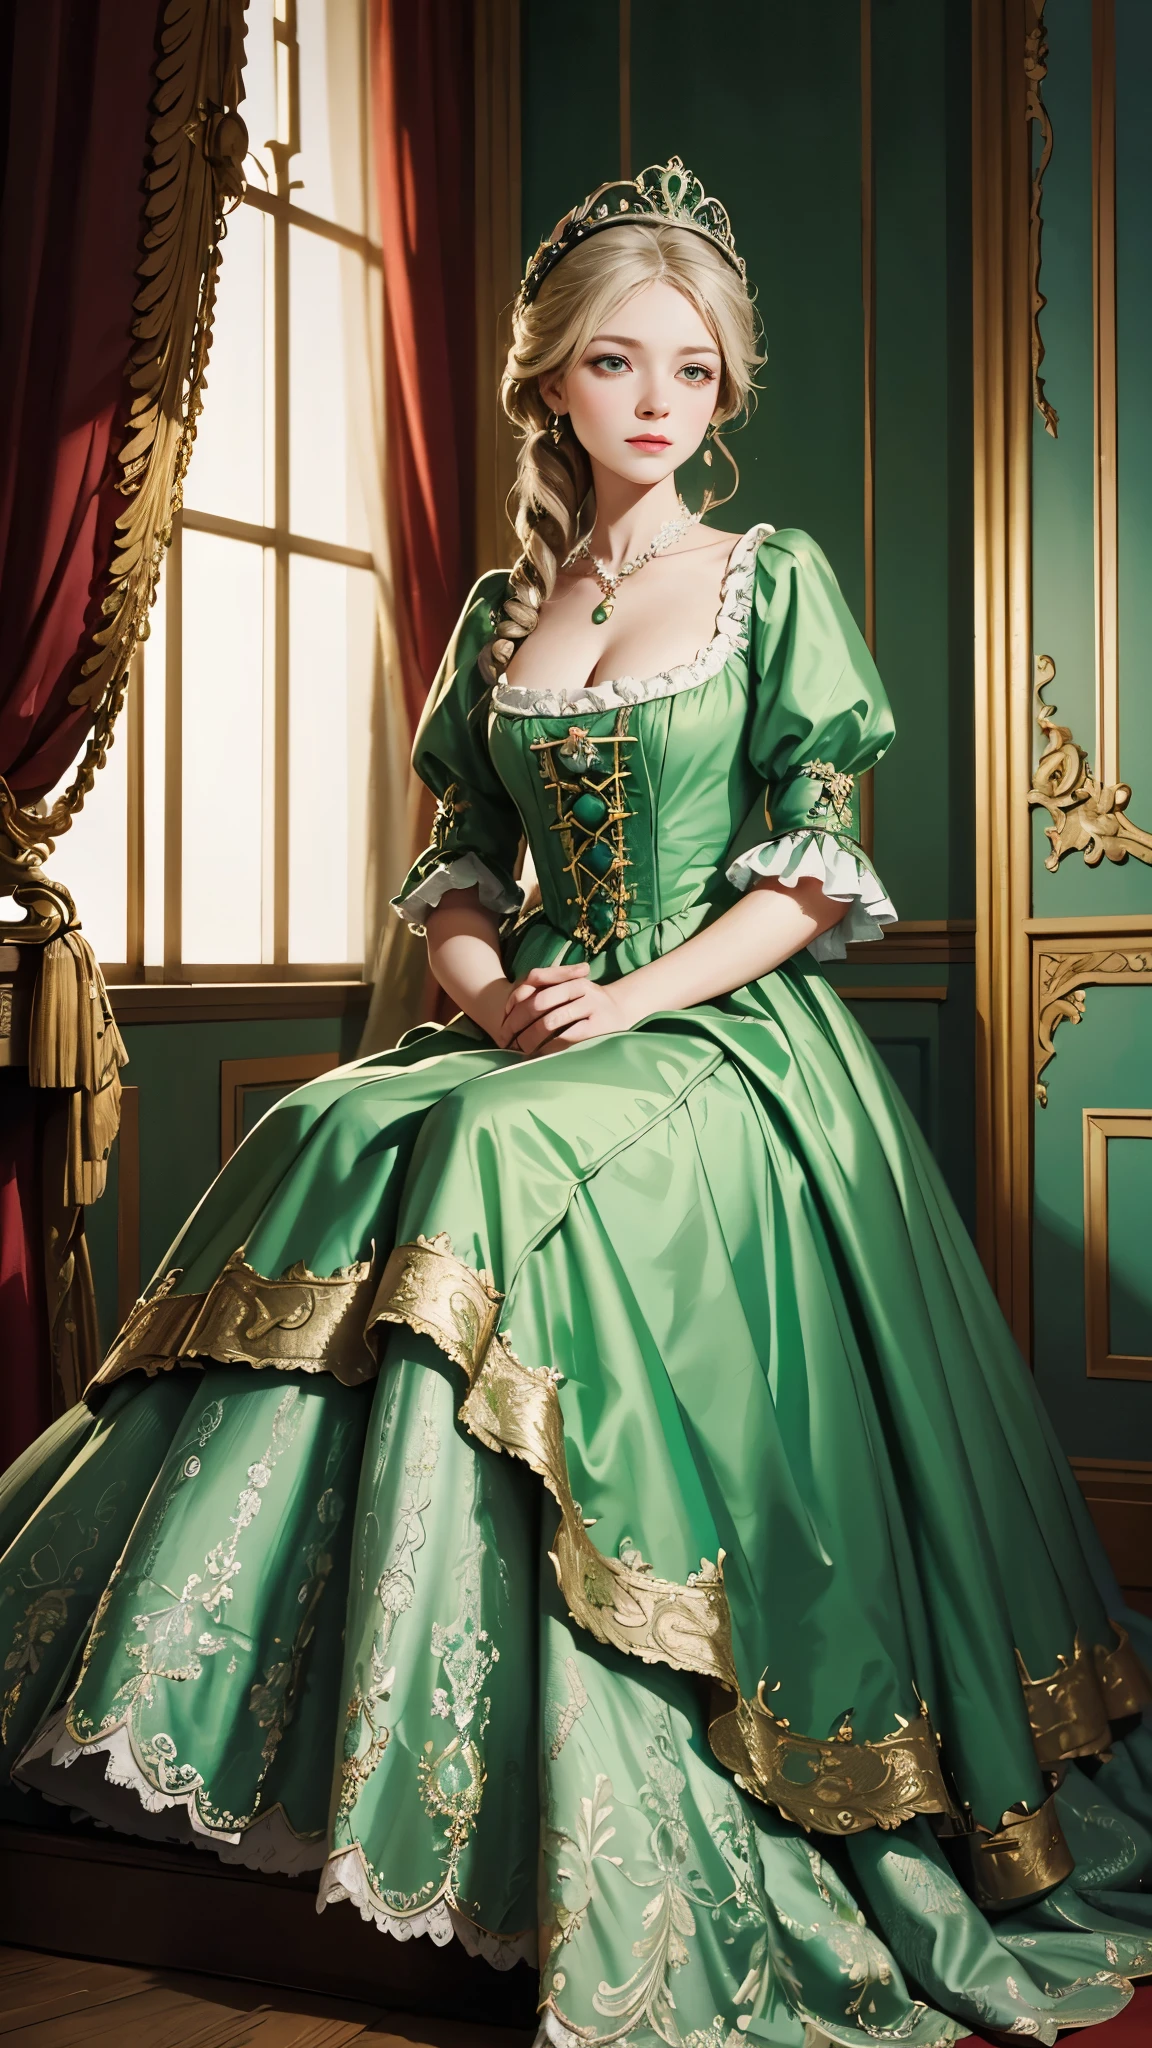 녹색 드레스를 입은 여자가 계단에 앉아 있다, 니나 페트로브나 발레토바의 초상화, 플리커, 로코코, dress in the style of 로코코, 역사적인 바로크 드레스, 로코코 queen, 1 7세기 공작부인, 귀족 의류, # 로코코, 그루지야 드레스 놀라운 직물, 마리 앙투아네트, 로코코 dress